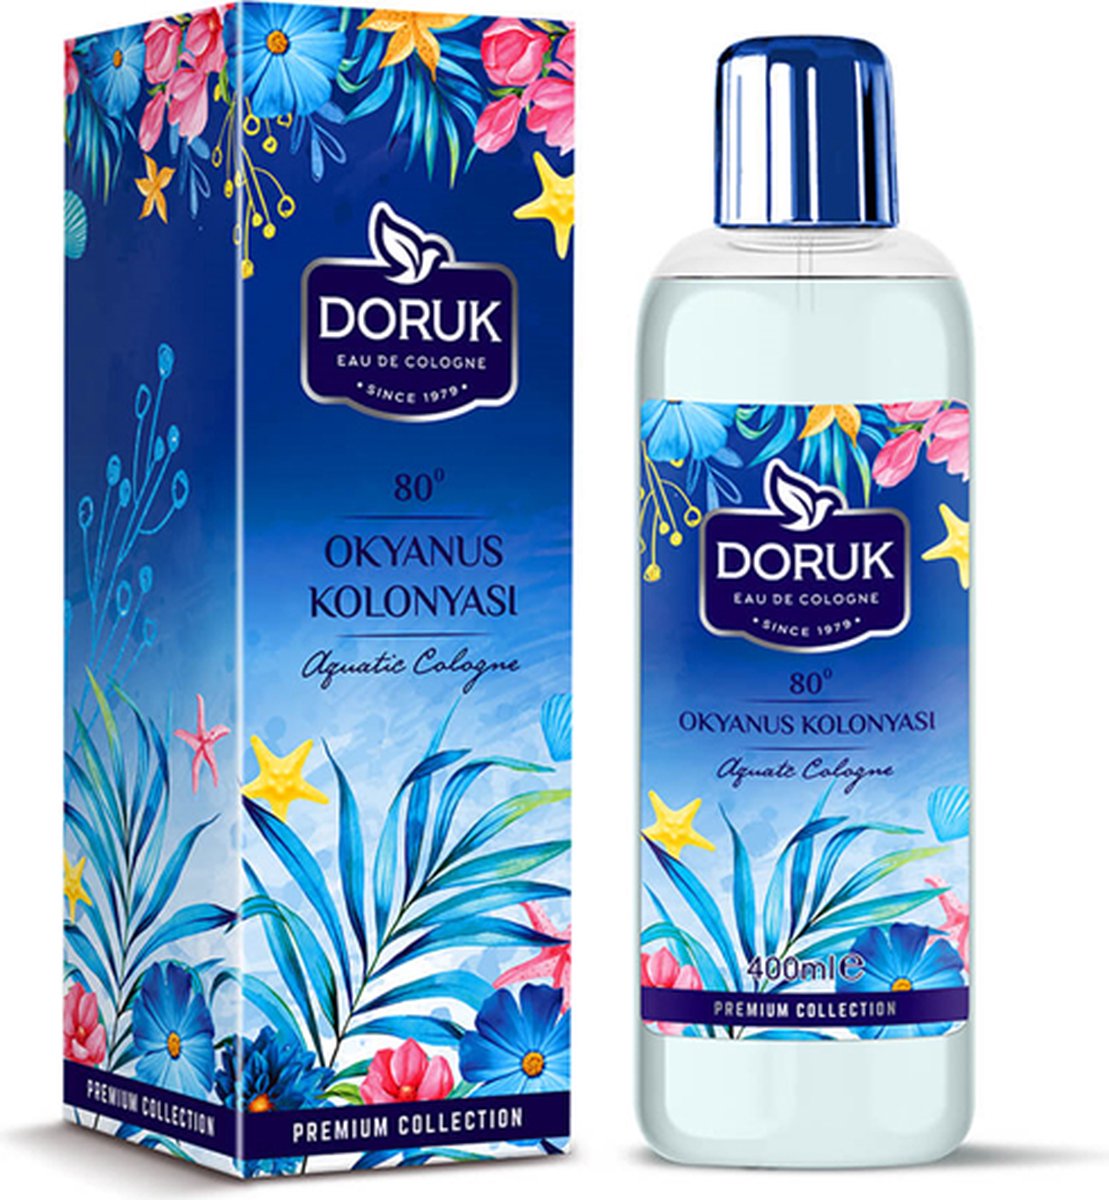 Doruk - Eau de cologne 400ml - 80° alcohol - Oceaan cologne - Optimale desinfectie van handen